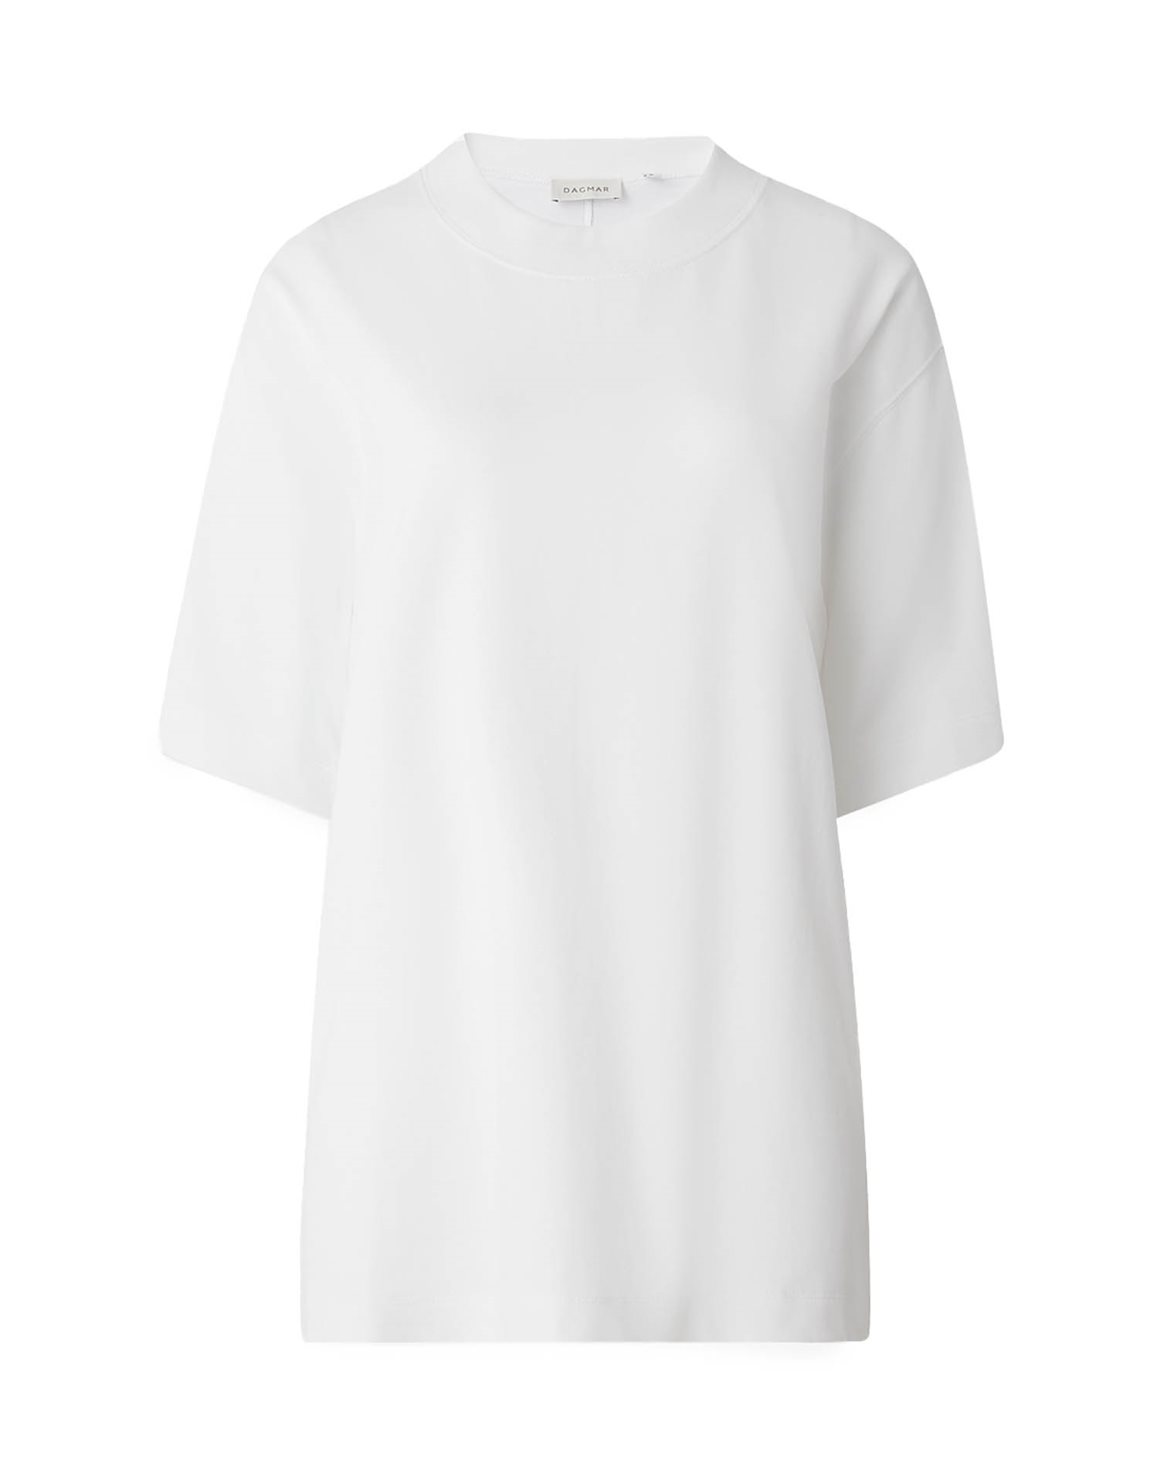 Oversized Sweatshirt Tunic - White – Carriage House Clothing